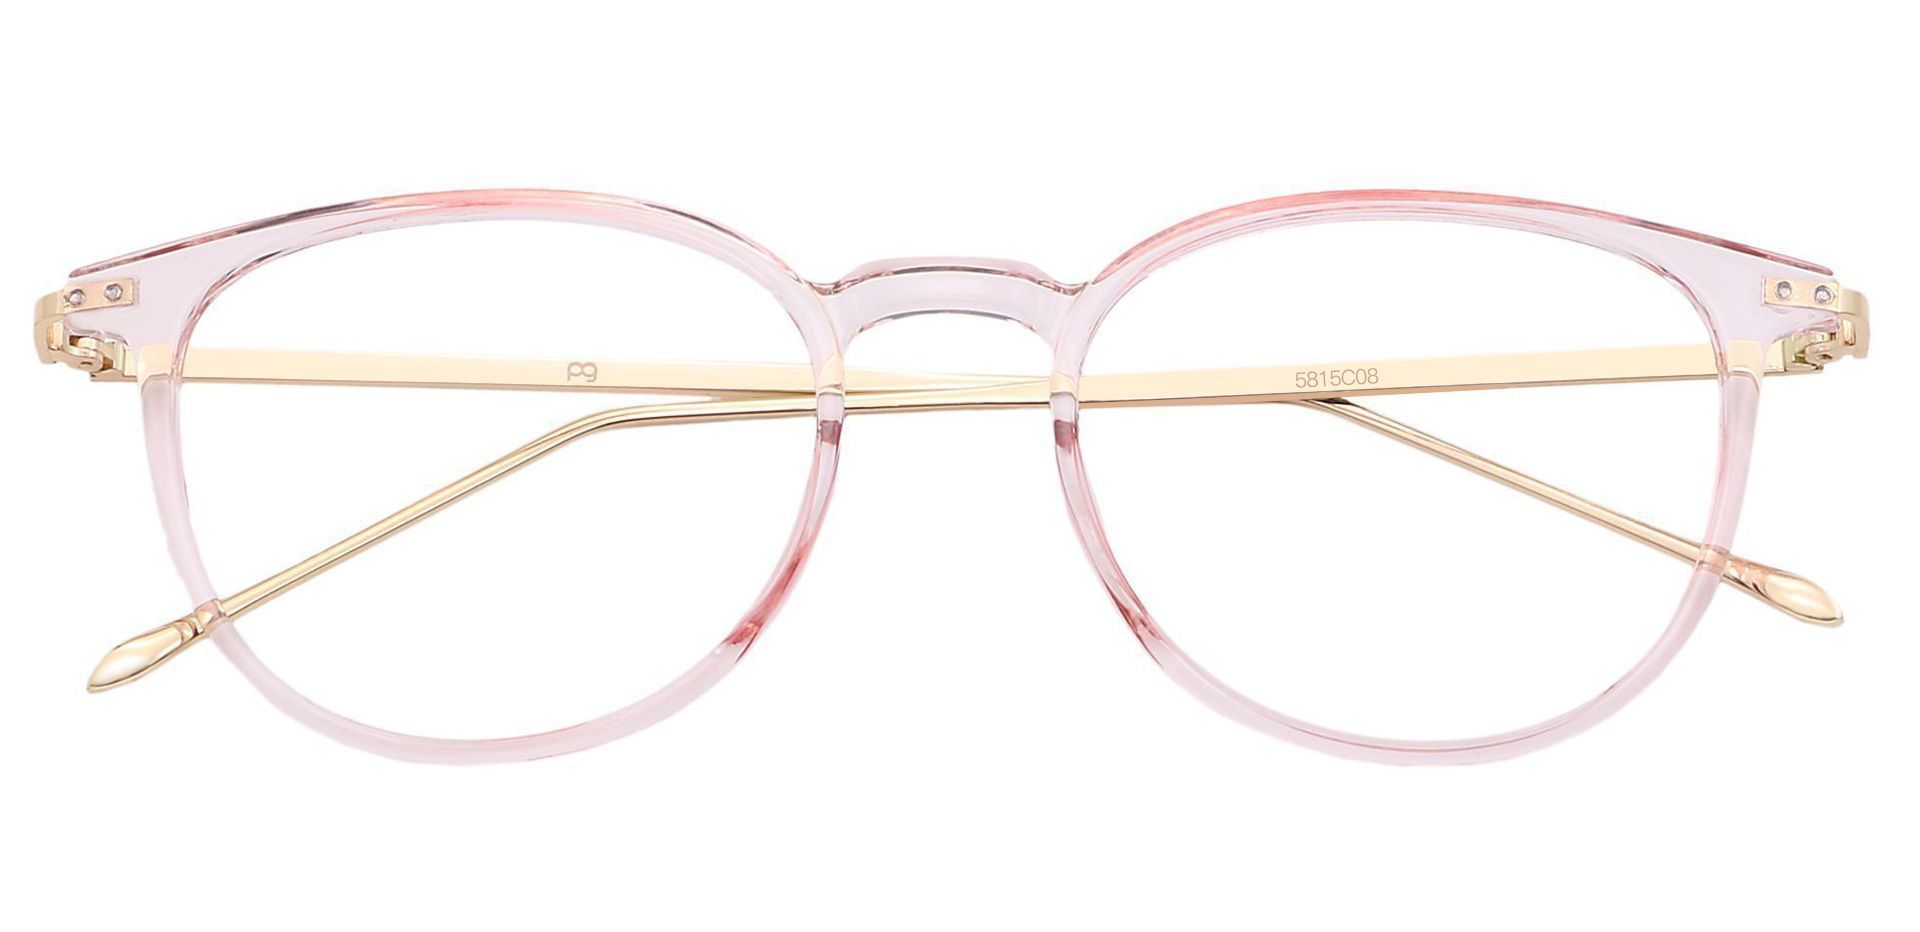 Elliott Round Eyeglasses Frame - Pink